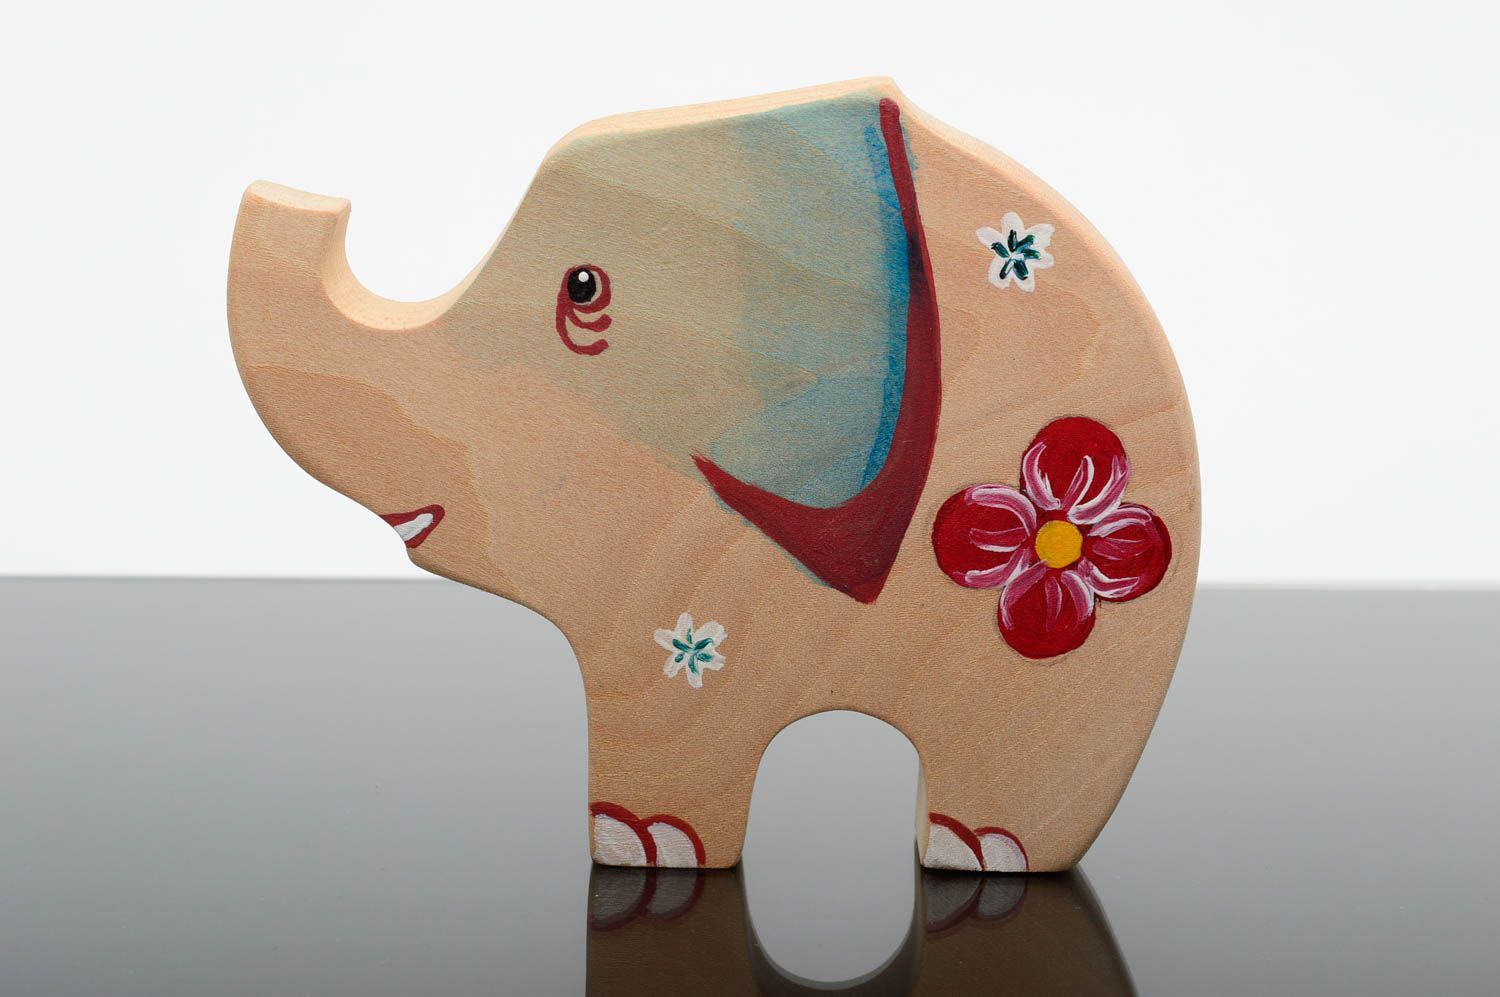 Игрушка ручной работы игрушка из дерева фигурка из дерева расписная Слон фото 1